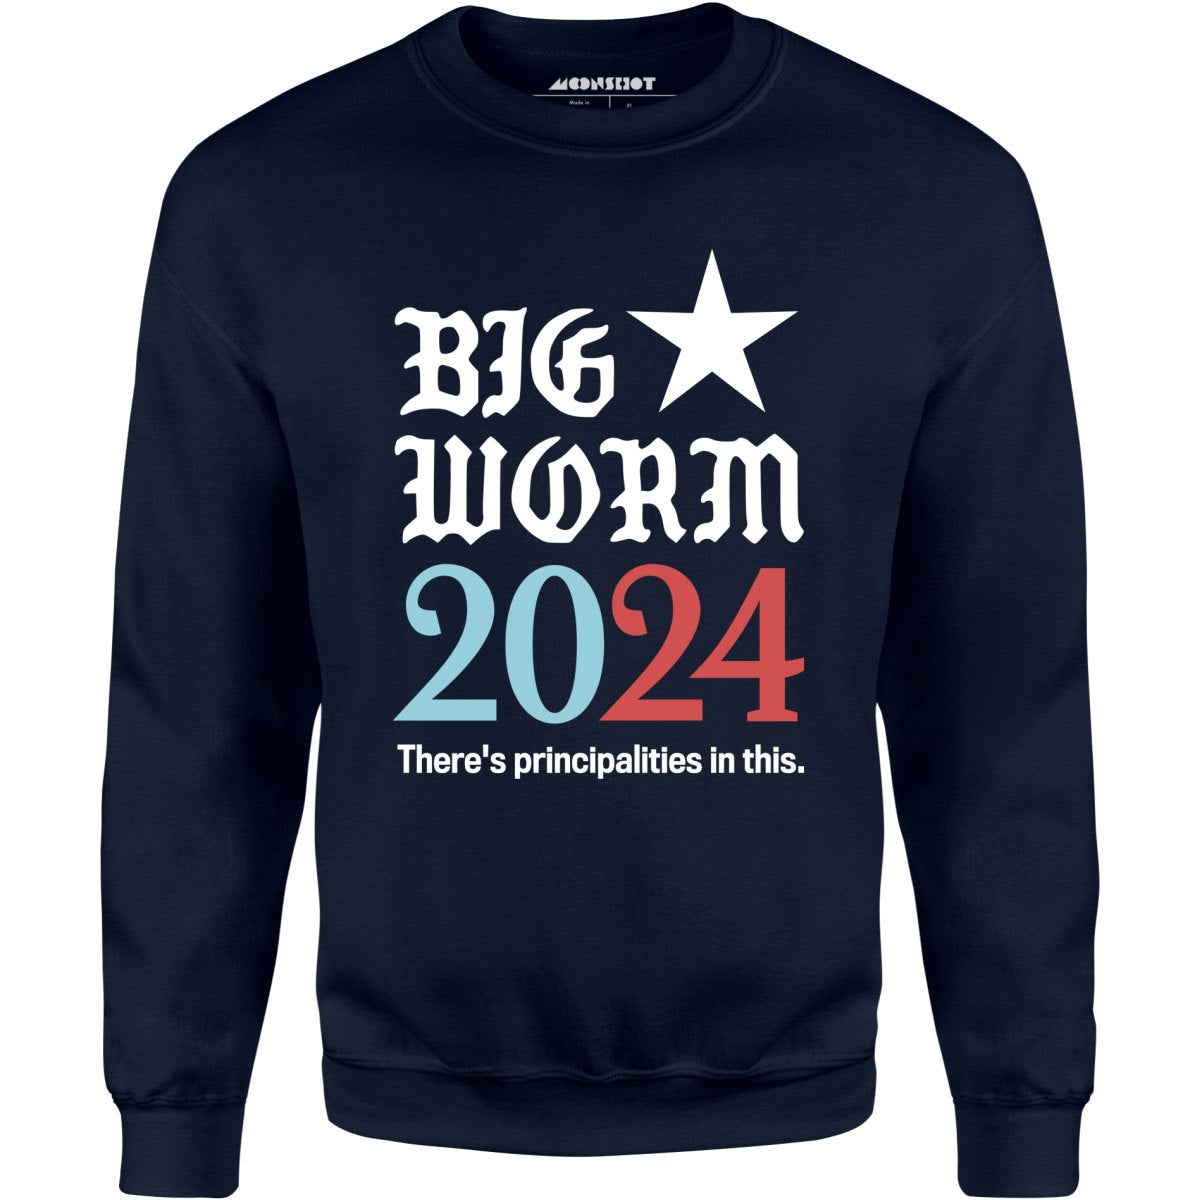 Big Worm 2024 - Unisex Sweatshirt